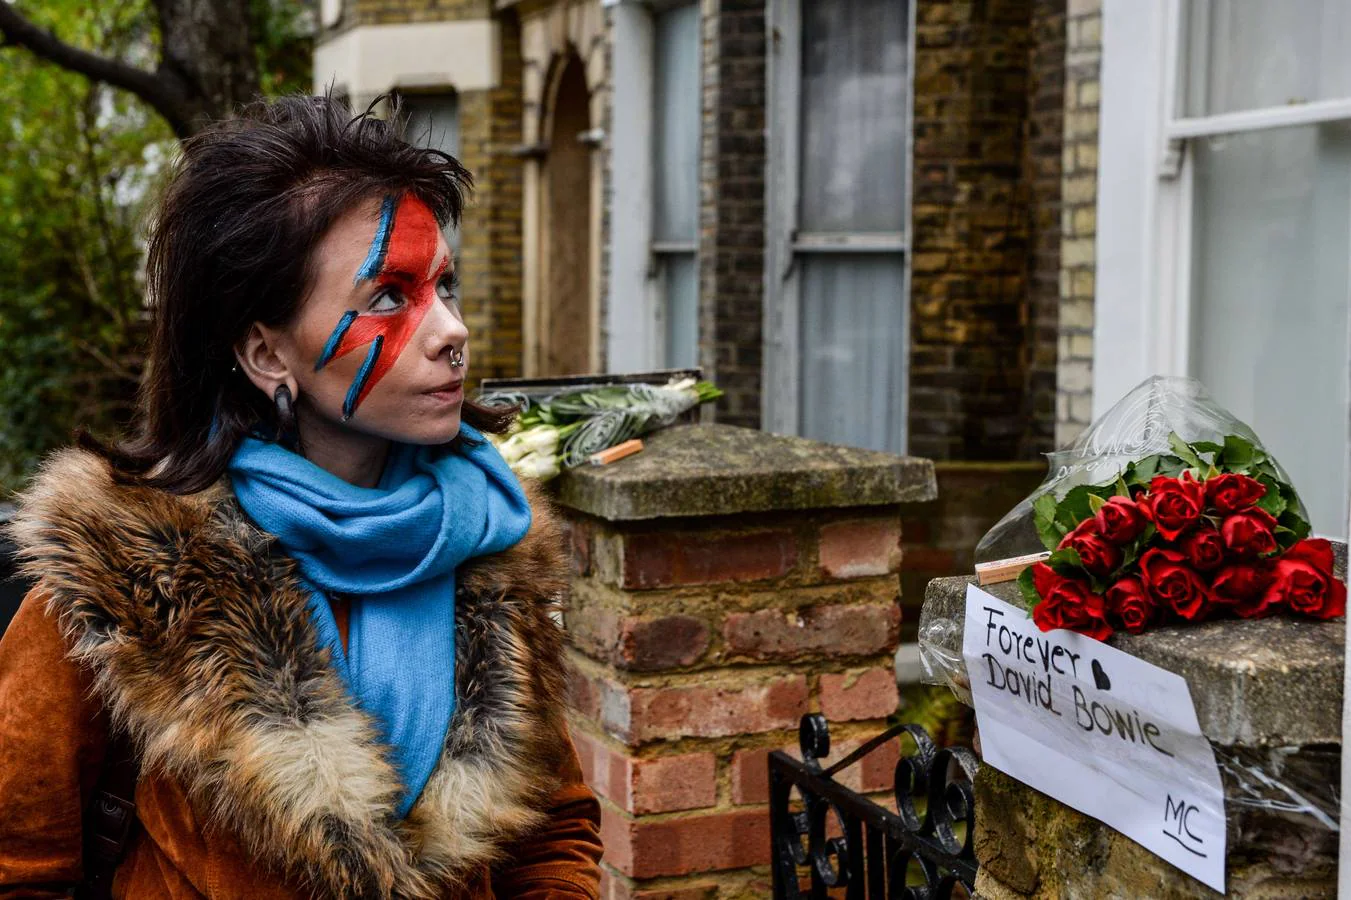 Tremendo explosión Hecho un desastre Fotos: Así se ha rendido tributo a Ziggy Stardust alrededor del mundo |  Mujer Hoy